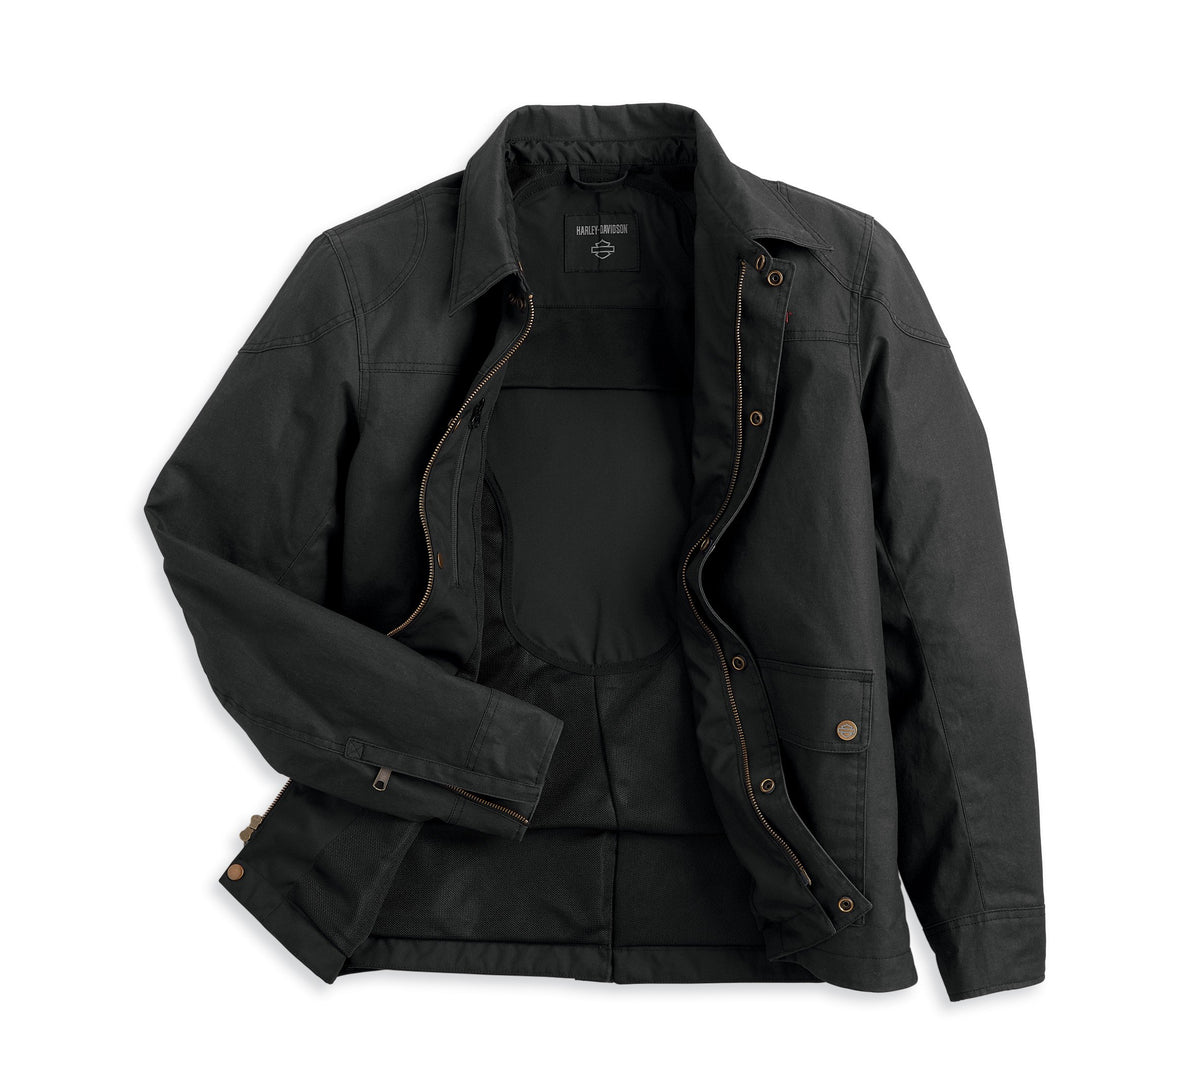 Harley-Davidson Men's Repose Textile Riding Jacket Black